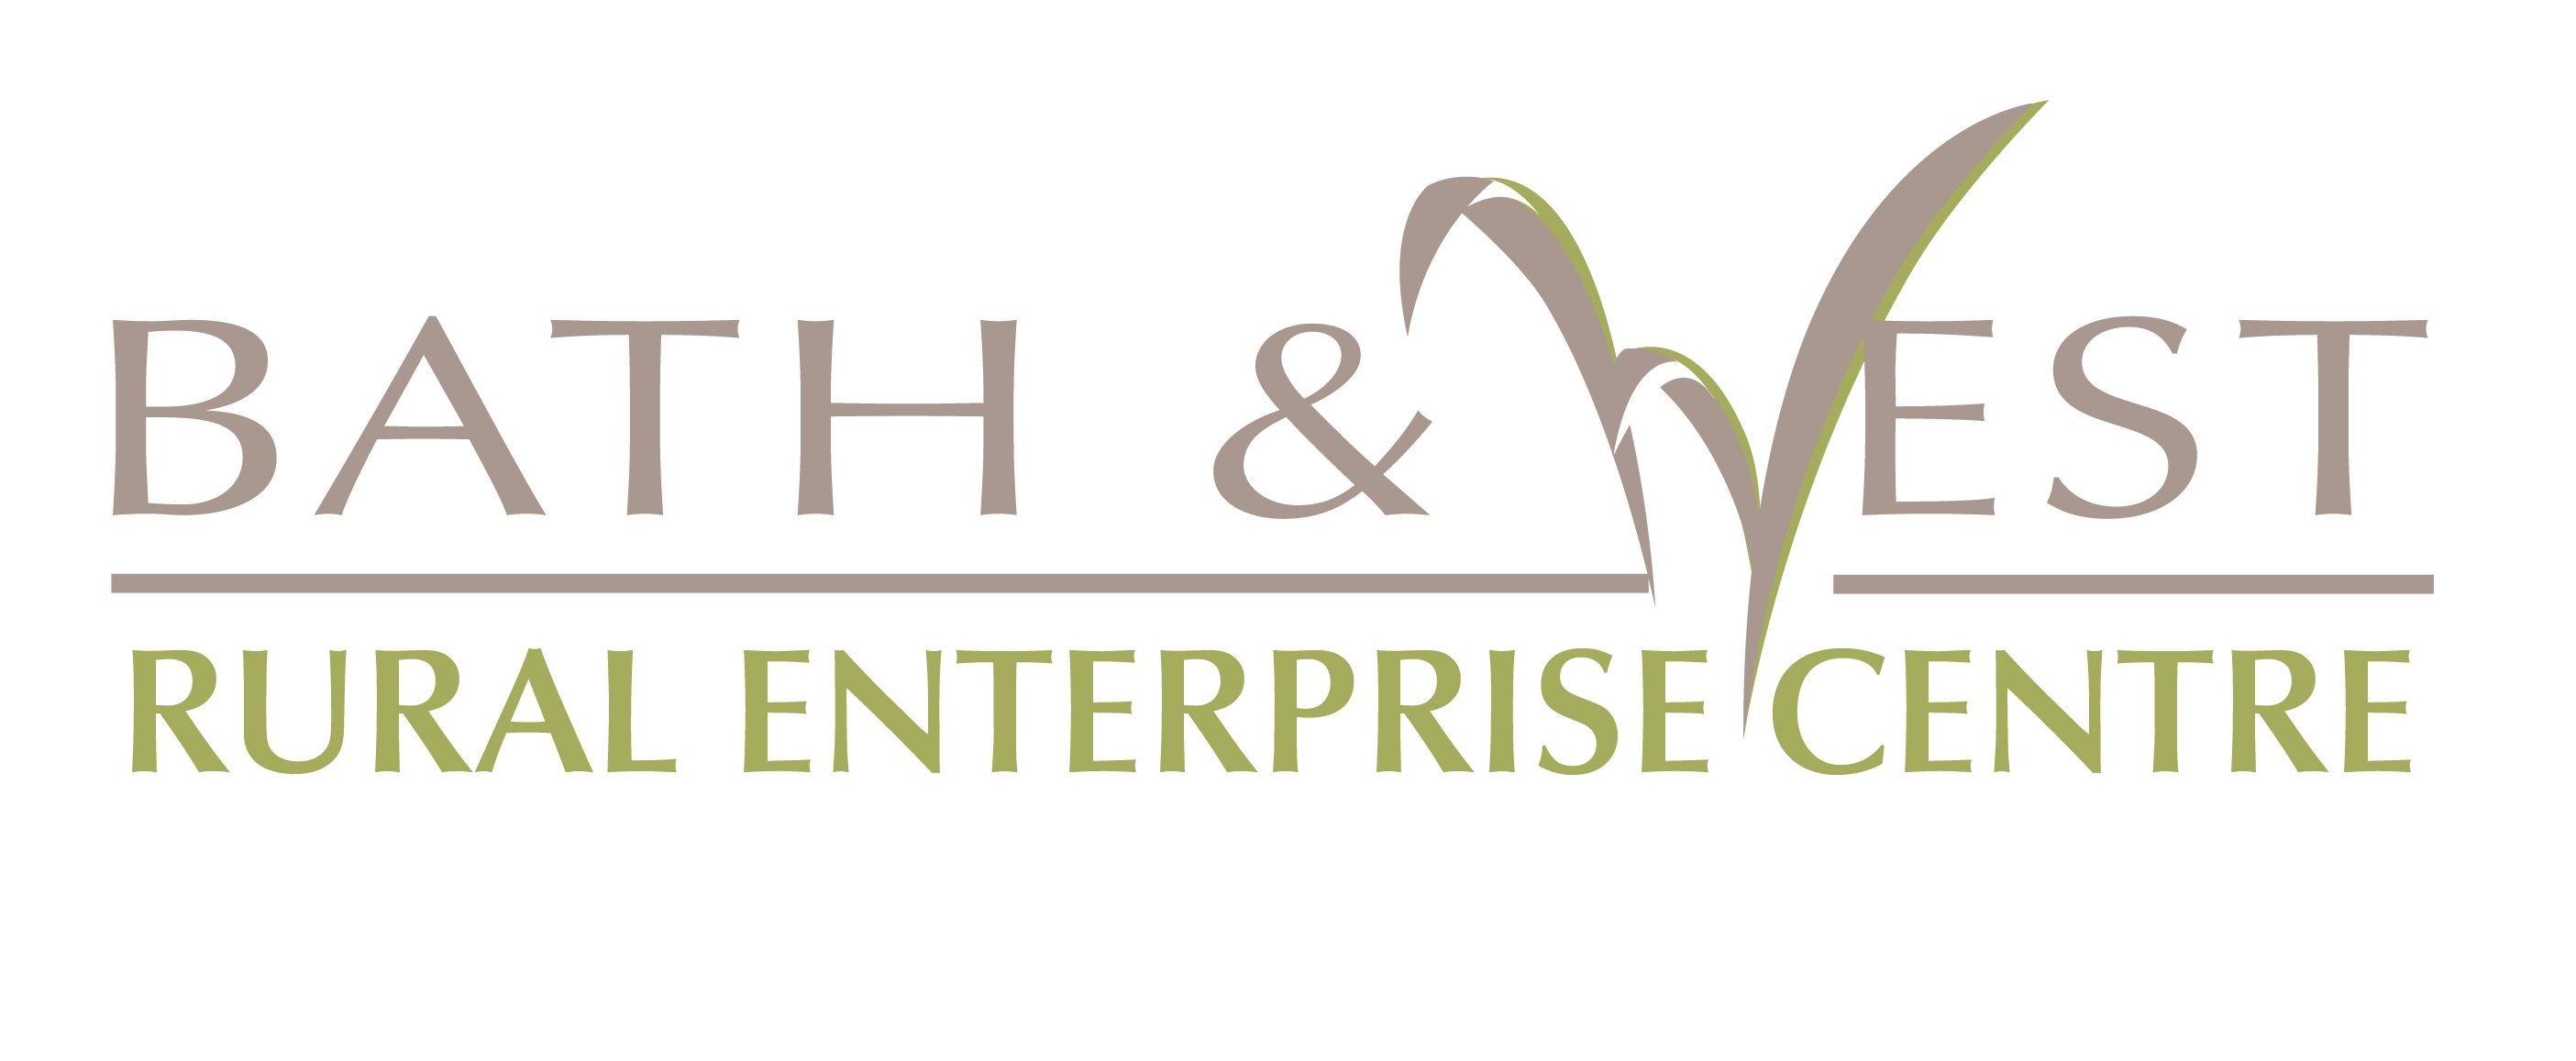 Bath & West Rural Enterprise Centre Logo